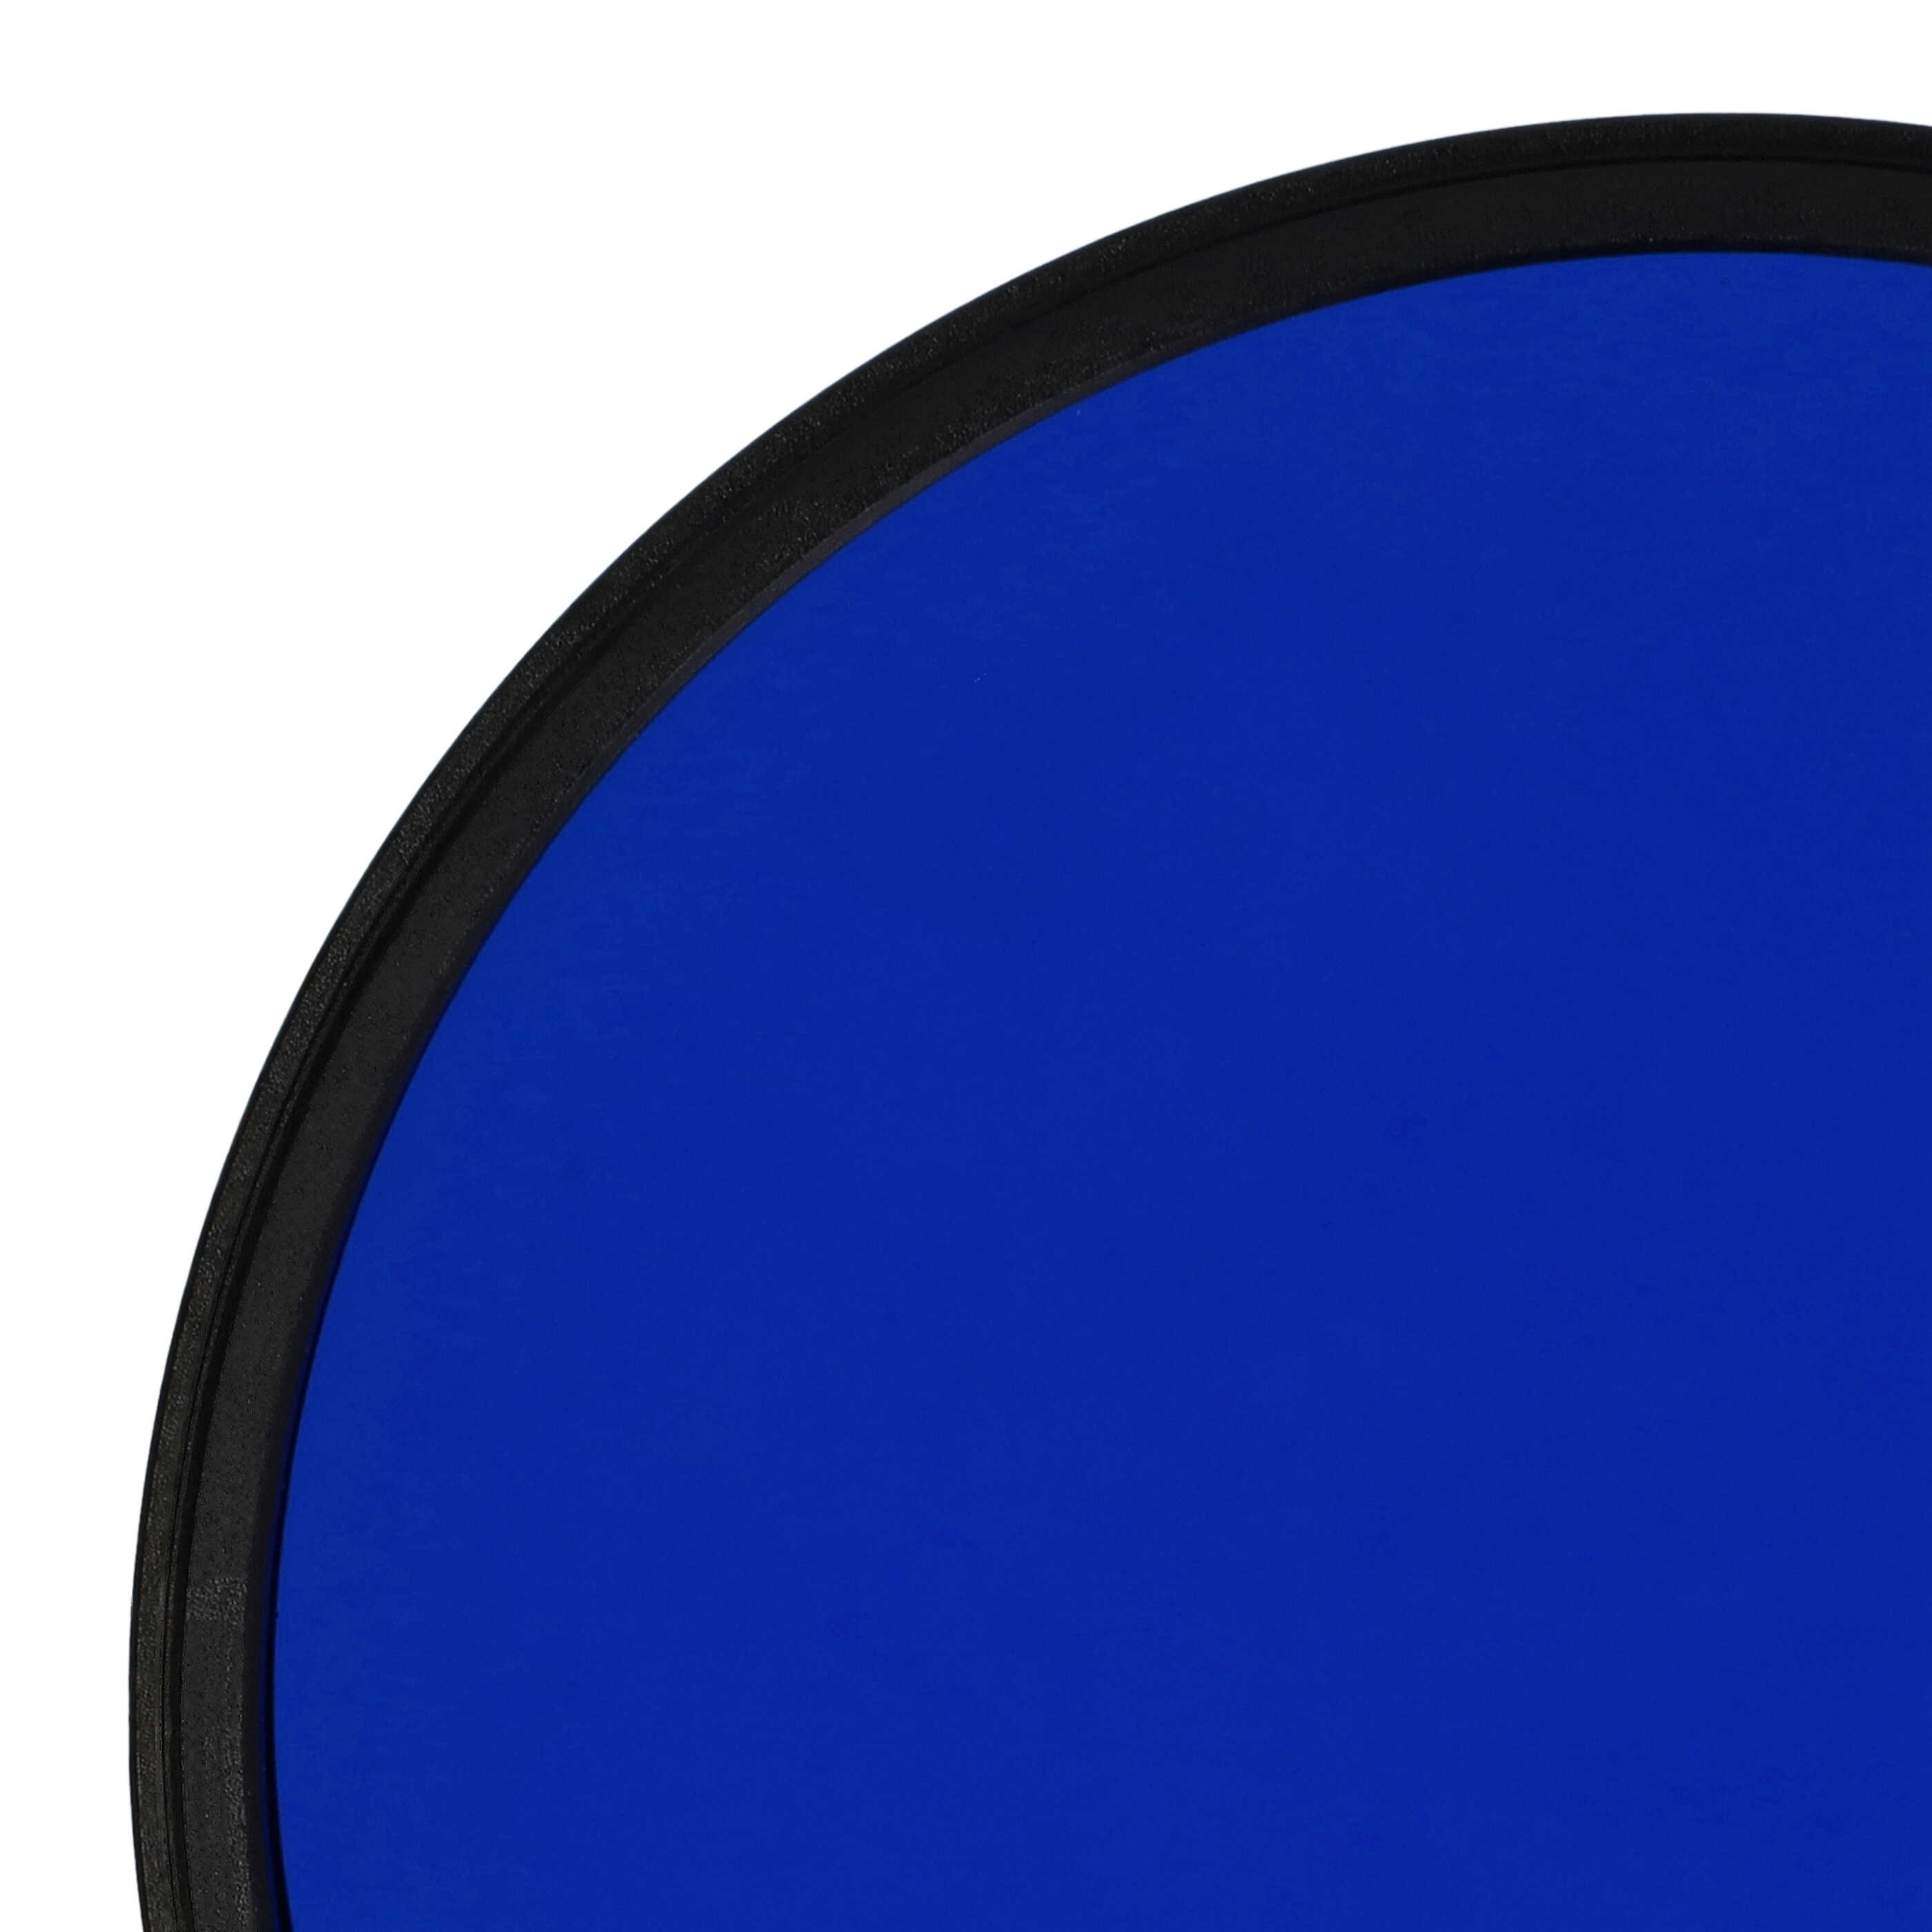 Filtro de color para objetivo de cámara con rosca de filtro de 77 mm - Filtro azul